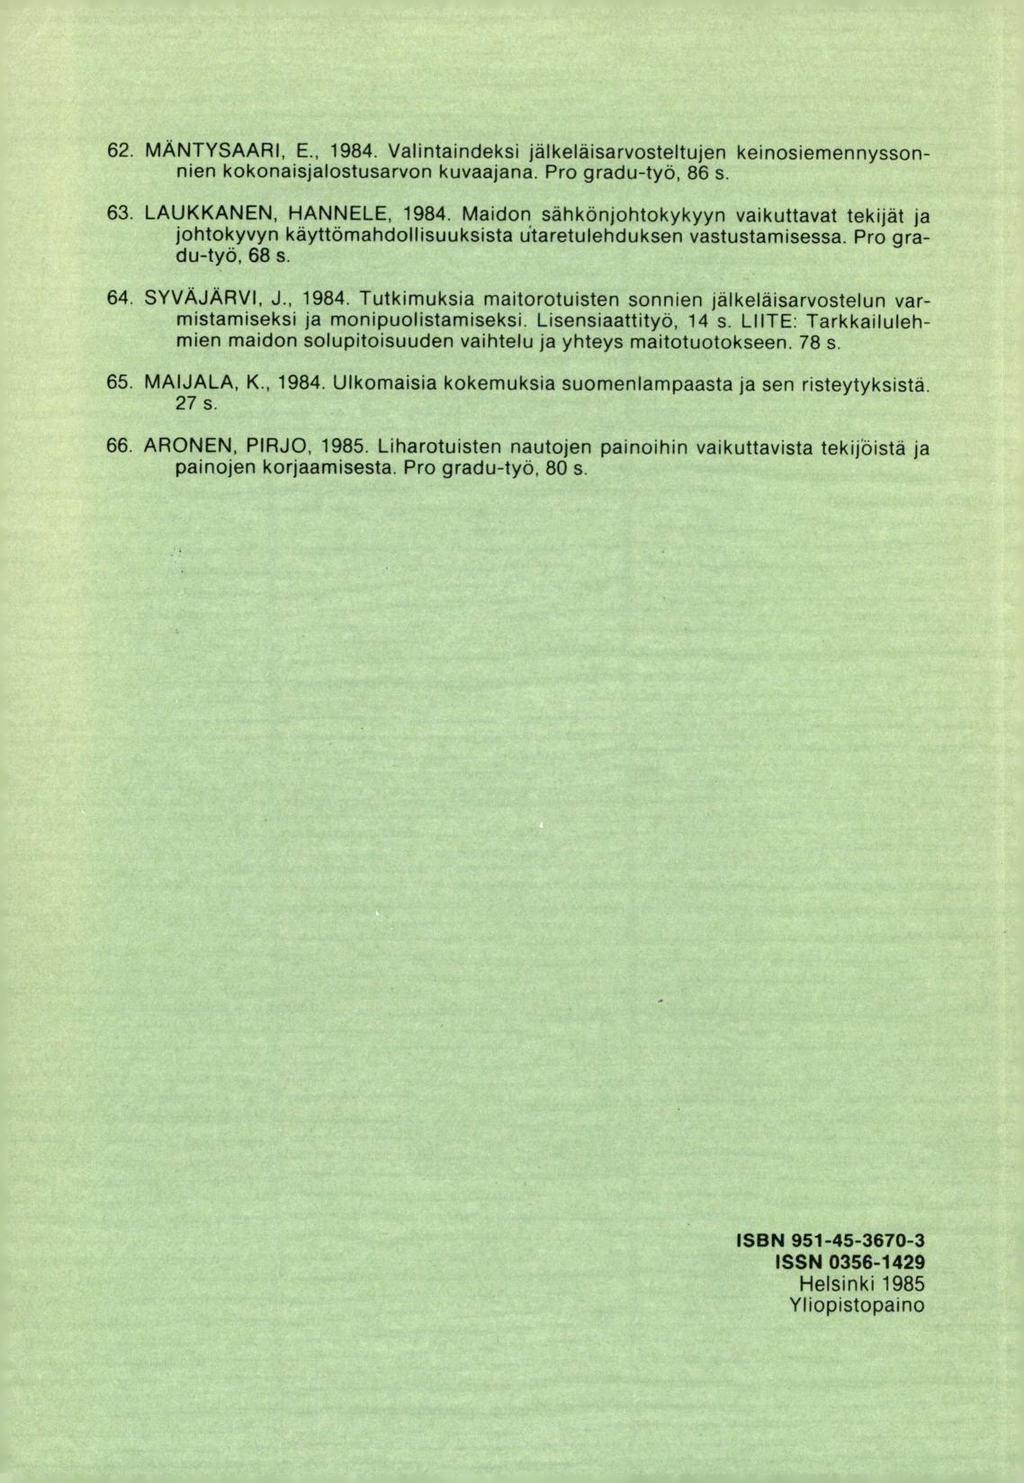 MÄNTYSAARI, E., 1984. Valintaindeksi jälkeläisarvosteltujen keinosiemennyssonnien kokonaisjalostusarvon kuvaajana. Pro gradu-työ, 86 s. LAUKKANEN, HANNELE, 1984.